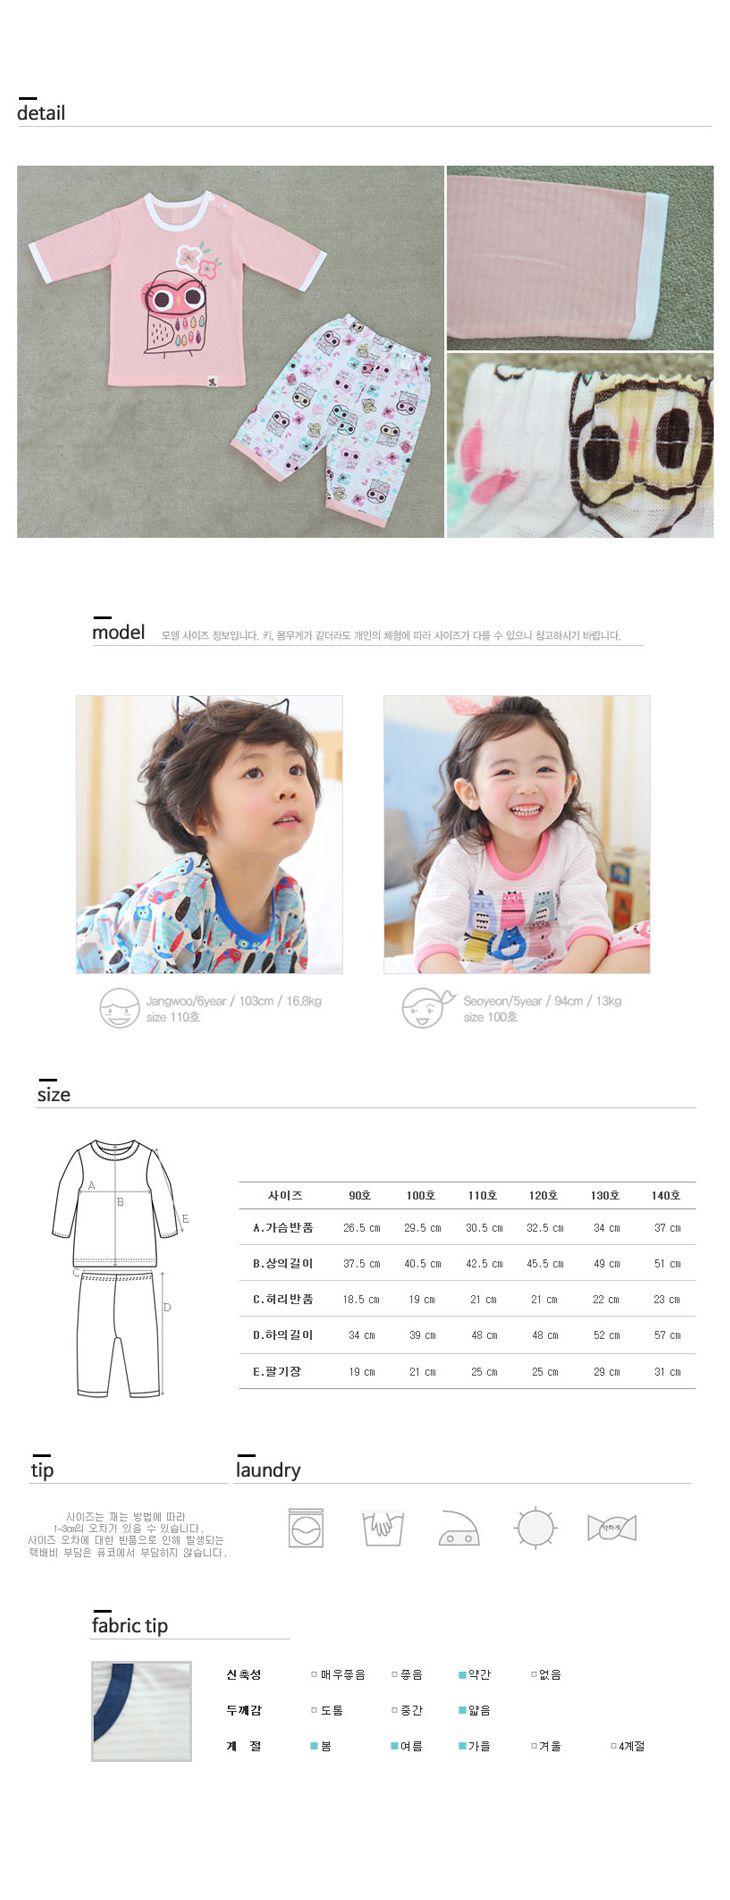 韓國製七分袖家居服套裝組-PUCO(彩繪貓頭鷹)粉